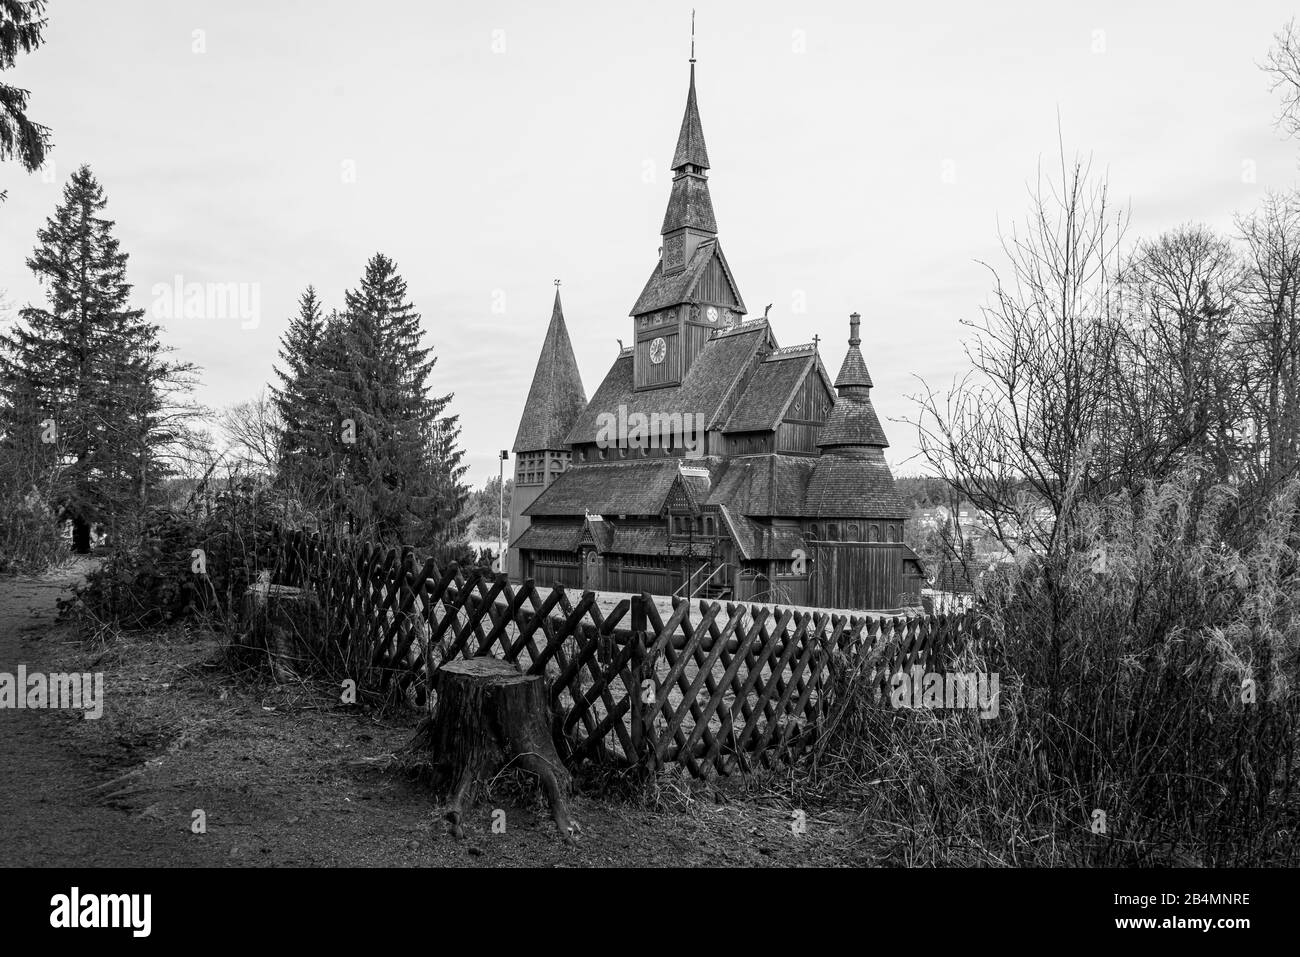 Germania, Bassa Sassonia, Harz, Goslar, Chiesa di Gustav Adolf Stave a Hahnenklee, costruita tra il 1907 e il 1908, modellata sulla chiesa di nave di Borgund in Norvegia. Foto Stock